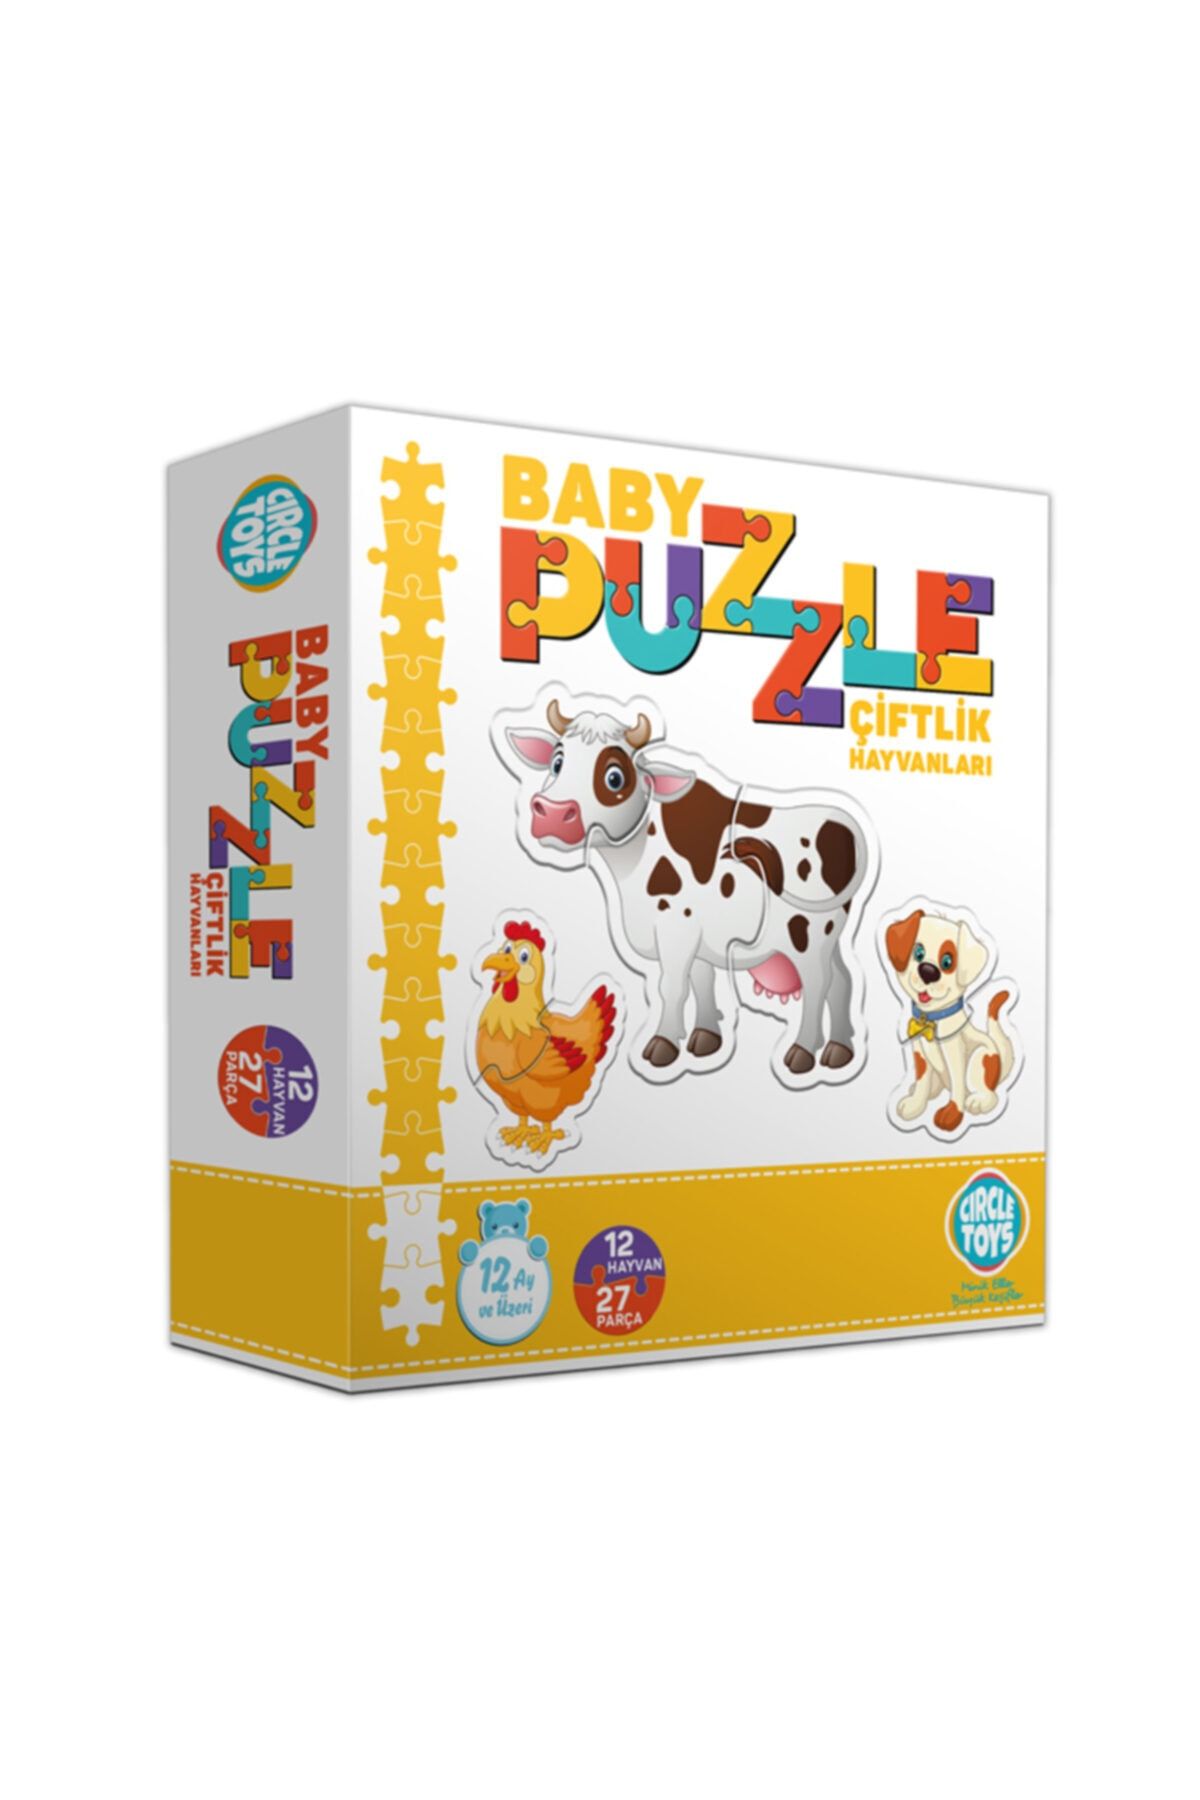 Circle Toys Özlem Toys Baby Puzzle Çiftlik Hayvanları Eğitici Görsel Algı Koordinasyon 1 Yaş 12 Hayvan